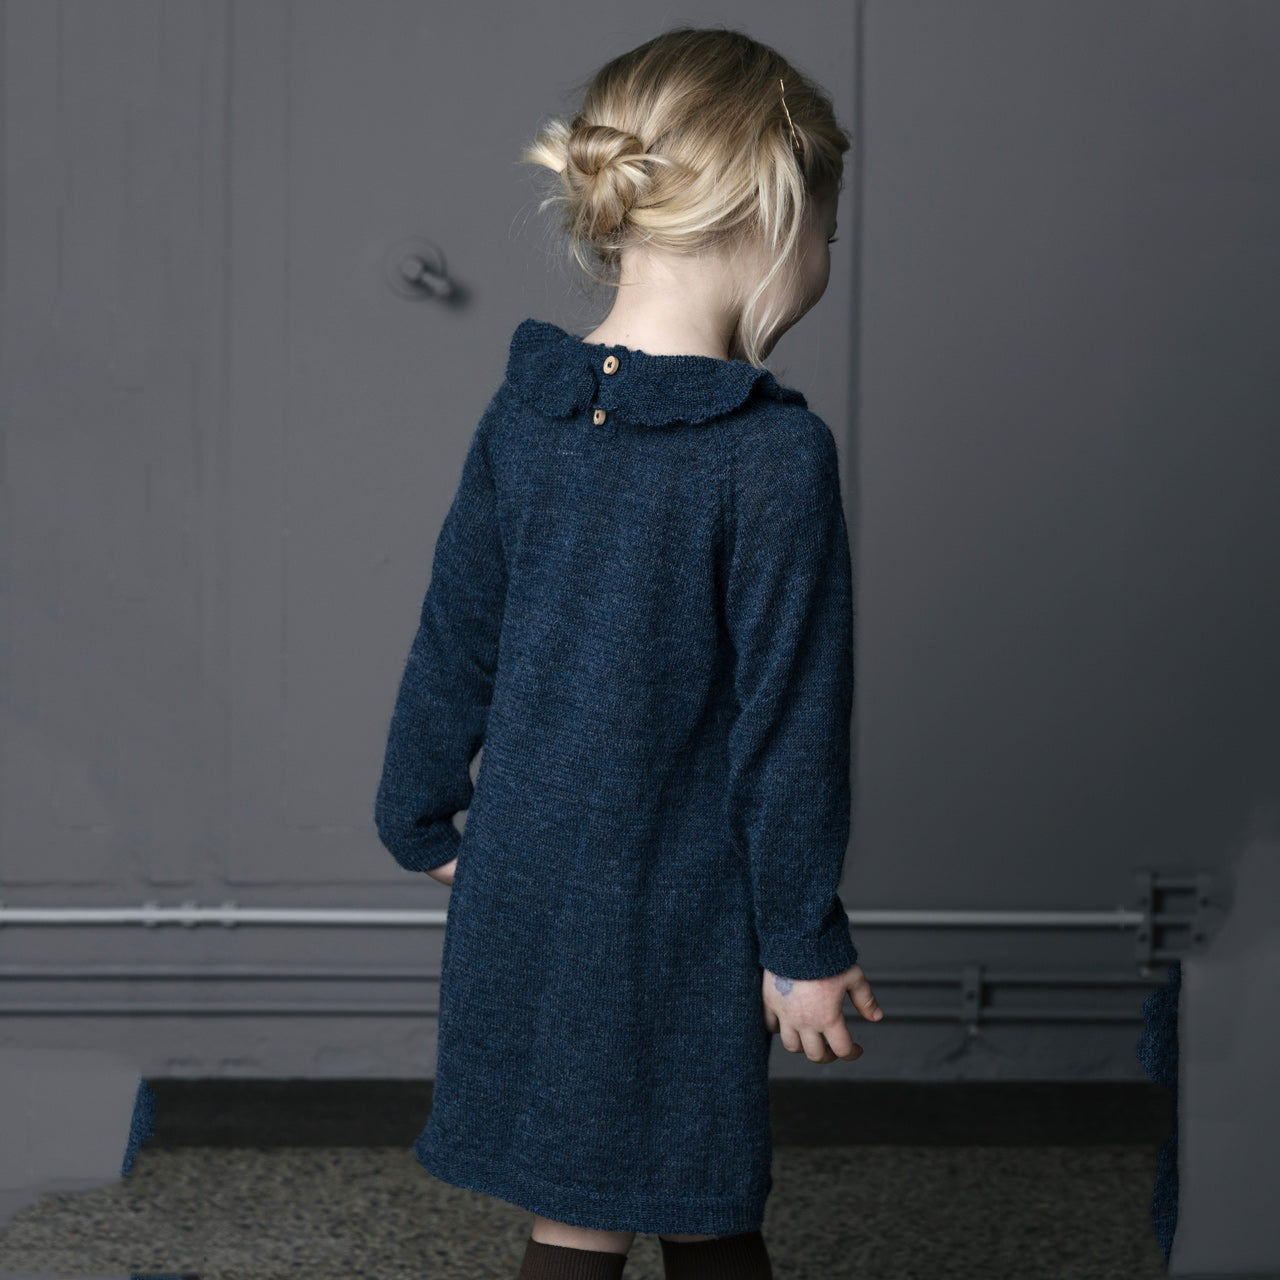 Ruffle Dress - 100% Alpaca - Indigo Blue (18m-8y)